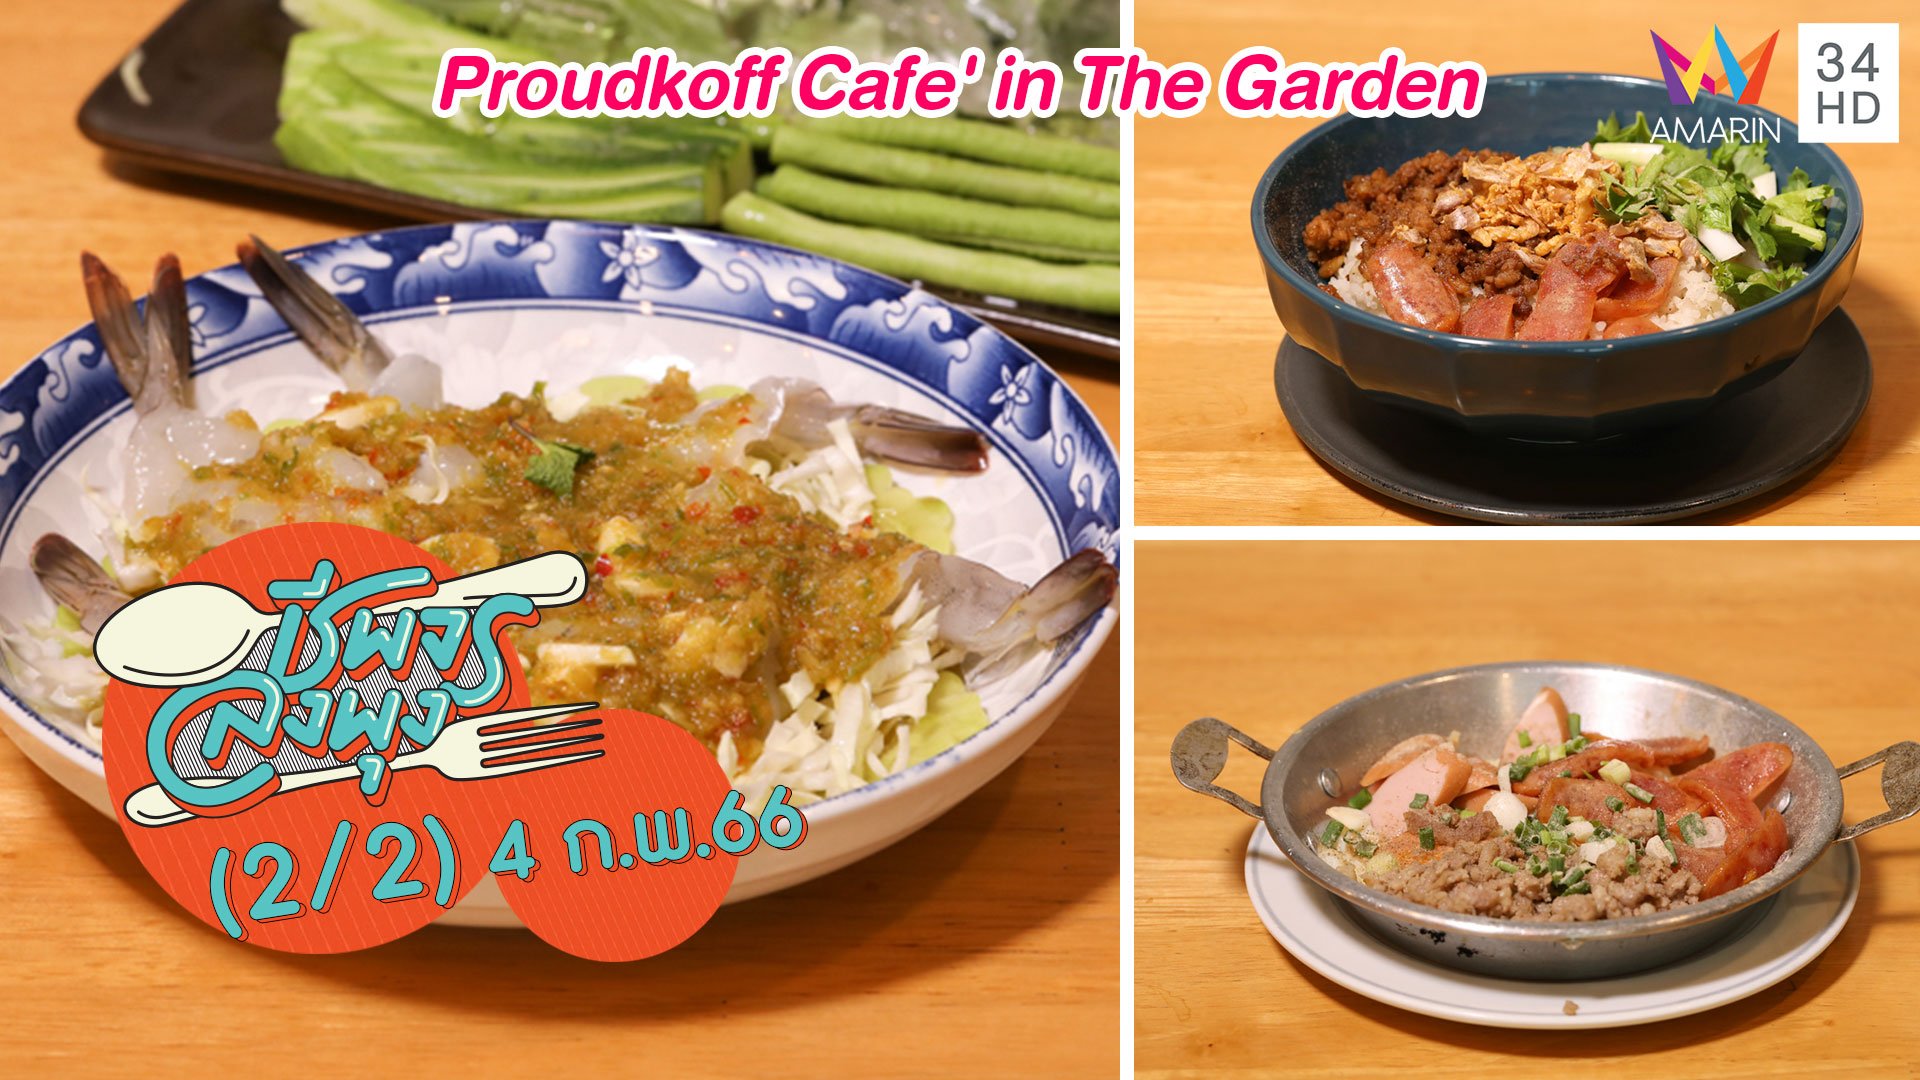 คาเฟ่หลากเมนู @ร้าน Proudkoff Cafe' in The Garden | ชีพจรลงพุง | 4 ก.พ. 66 (2/2) | AMARIN TVHD34